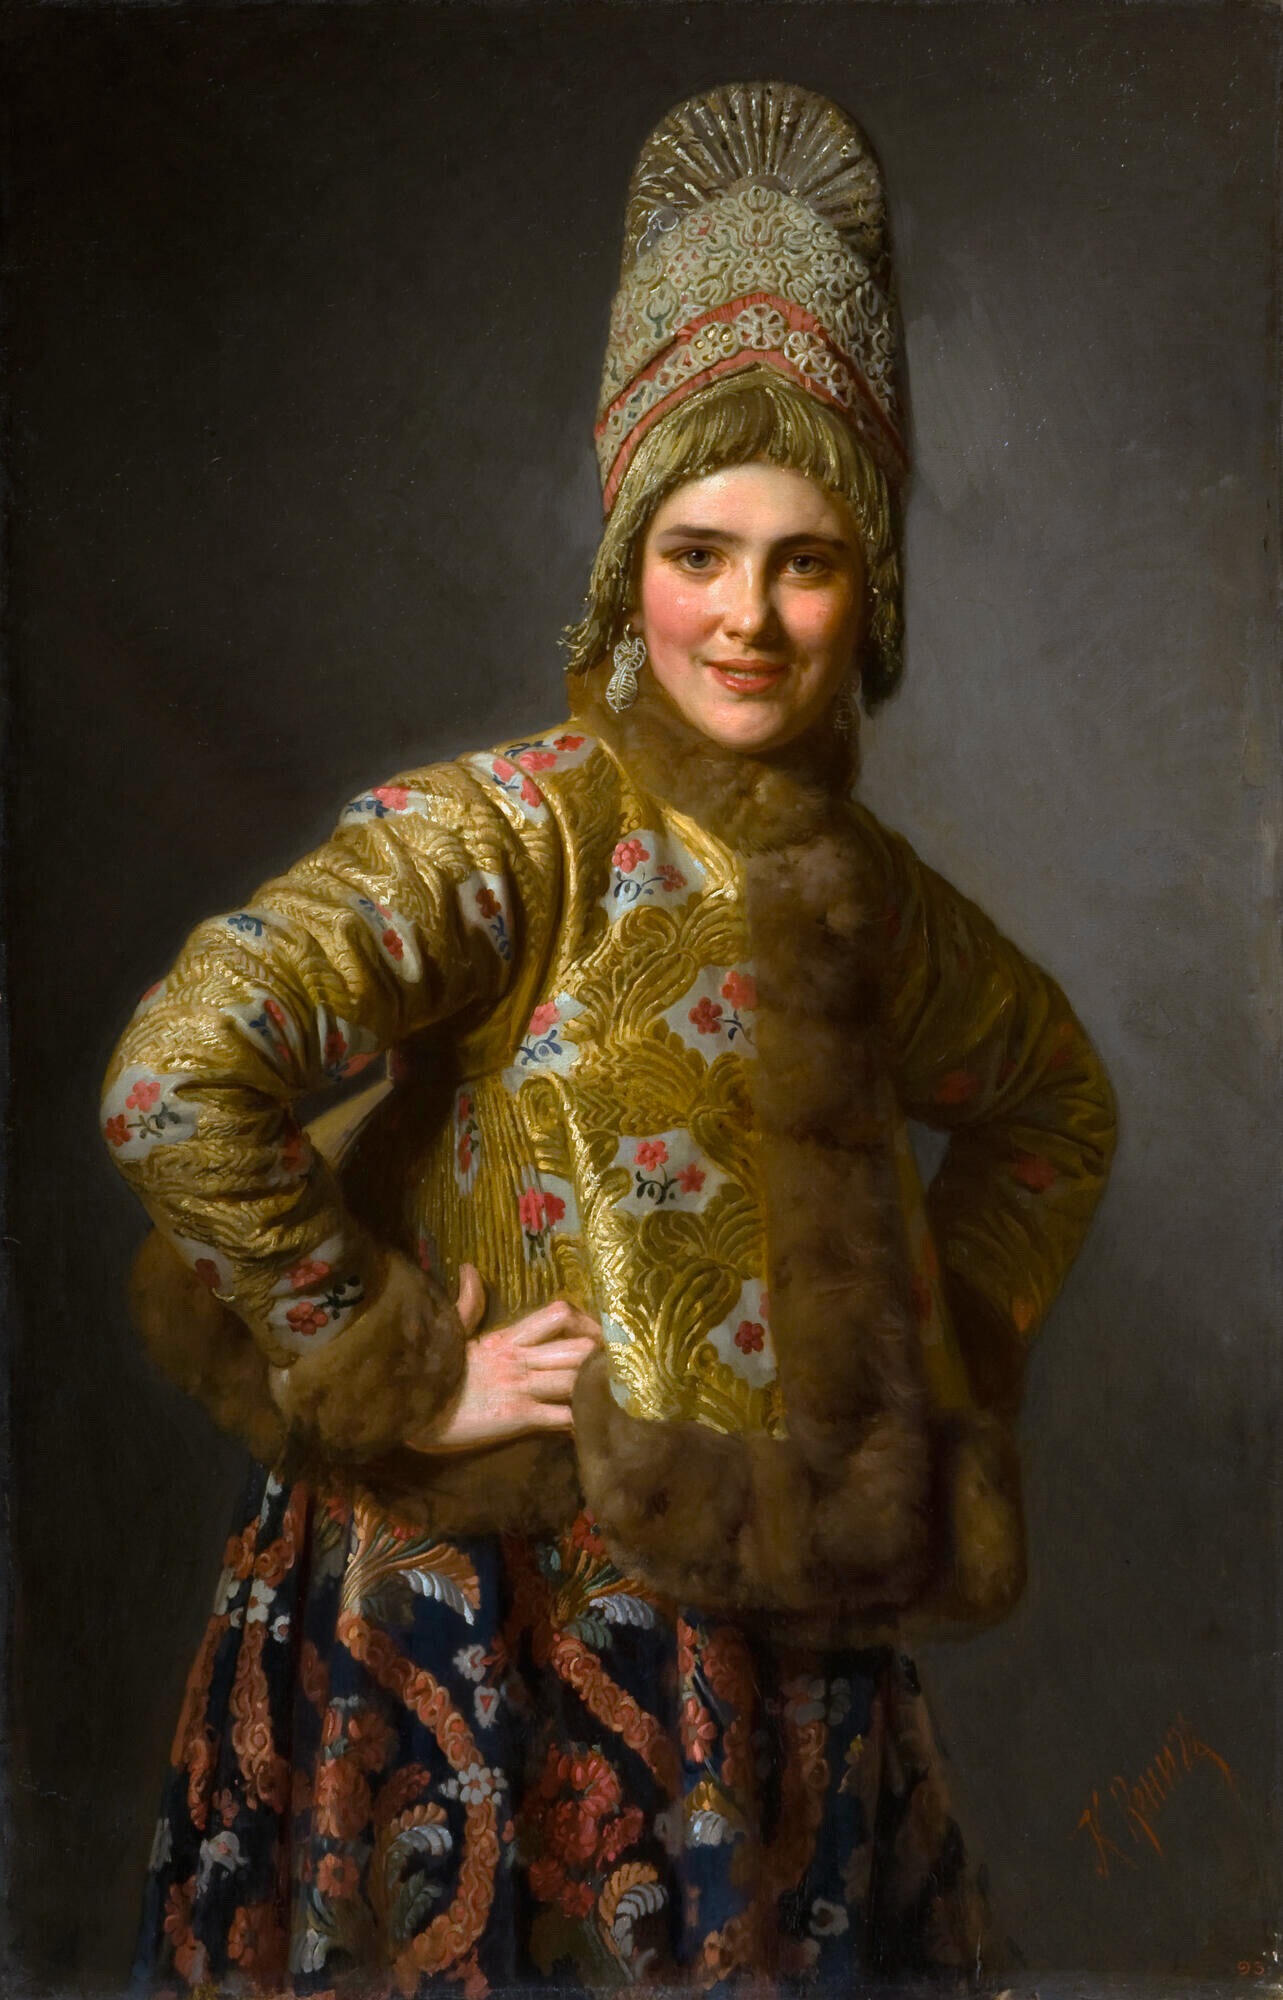 Russian Girl, 1889, by Karl Gottlieb Wenig